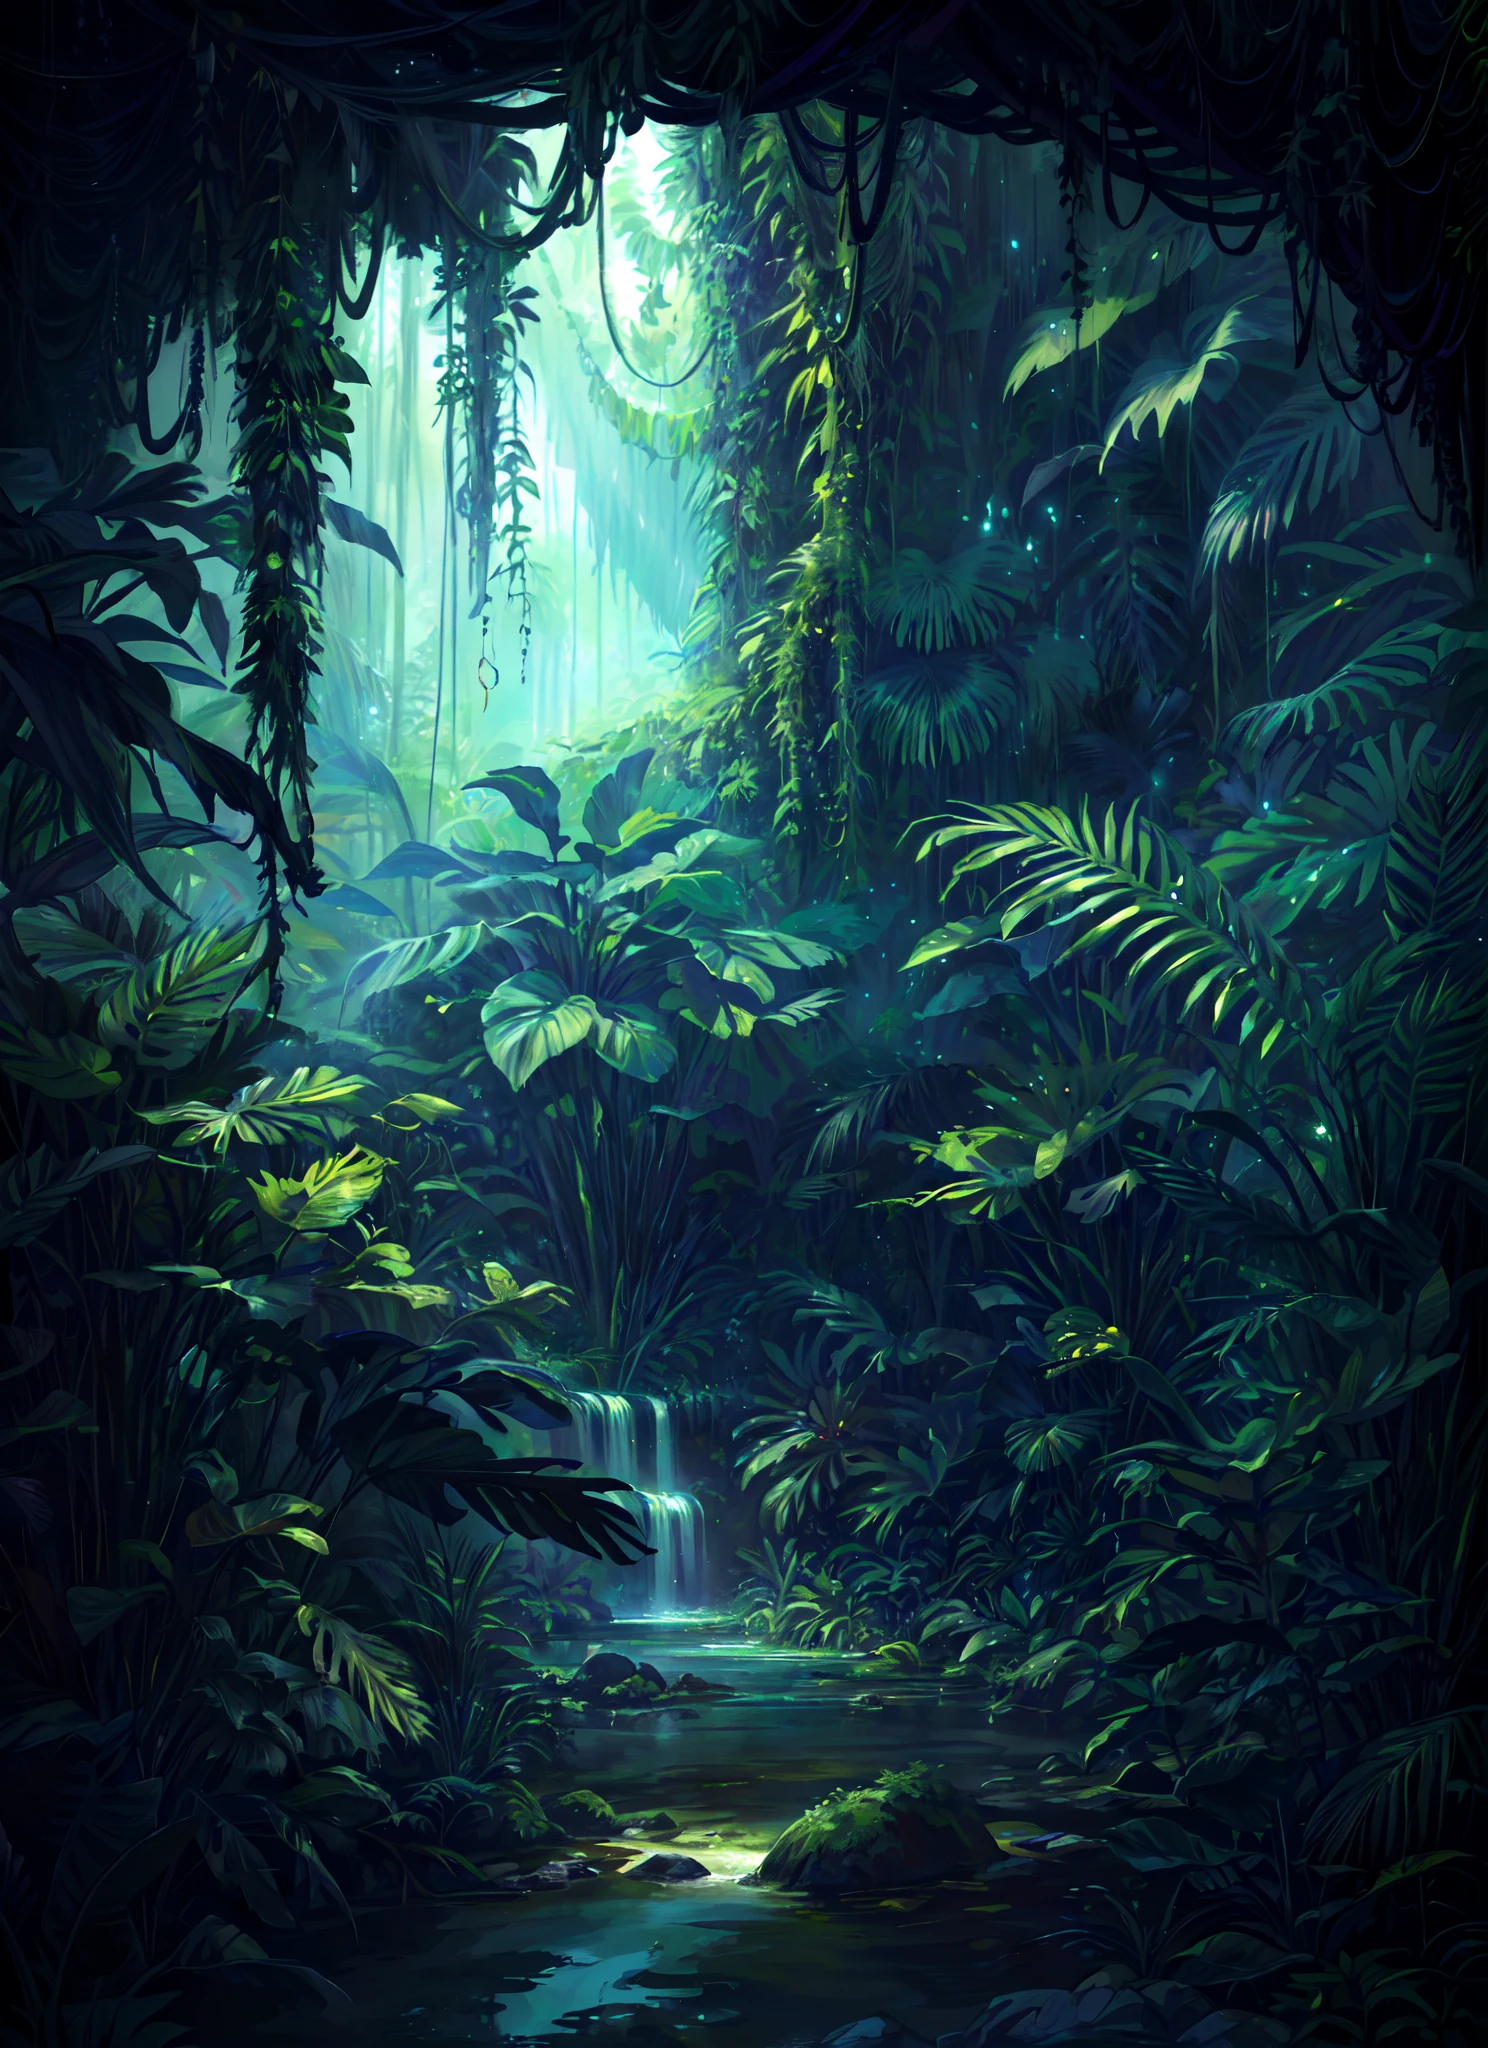 ein digitales Gemälde einer Dschungelszene mit einem Bach und Bäumen, tiefer Dschungel aus einer anderen Welt, Fantasie Dschungel, art nouveau Dschungelumgebung, tiefe Dschungeltextur, Dschungelumgebung, unheimlicher Dschungel, an alien jungle, overgrown Dschungelumgebung, schöner Dschungel, Dschungellandschaft, In einem außerirdischen Dschungel, Hintergrund Dschungel, unter den Dschungeln der Außenwelt, geheimnisvolles Dschungelgemälde